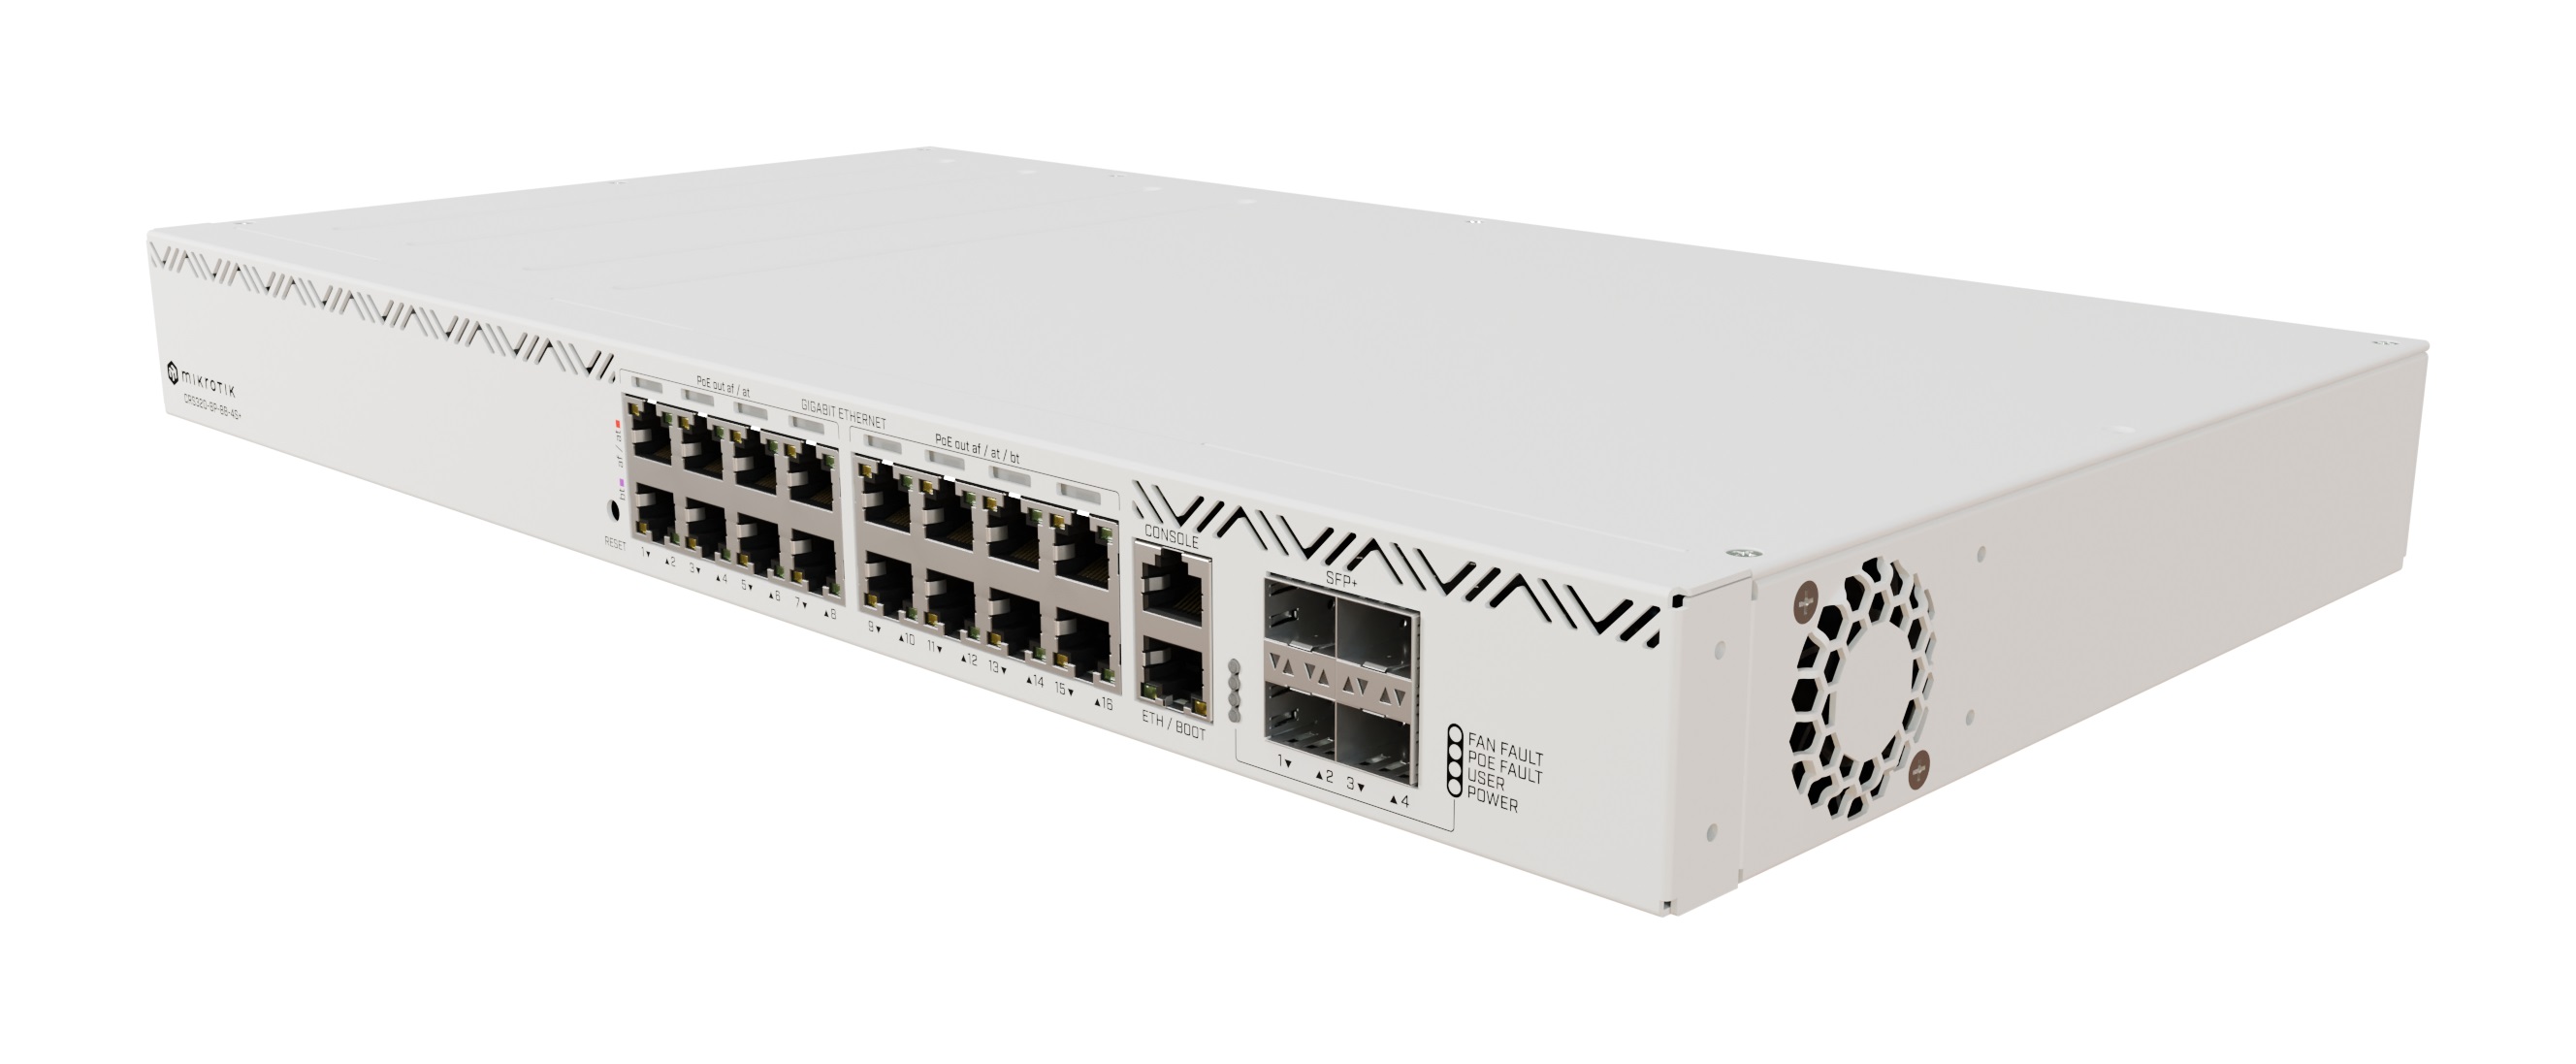 Mikrotik CRS320-8P-8B-4S+RM, Cloud Router Switch